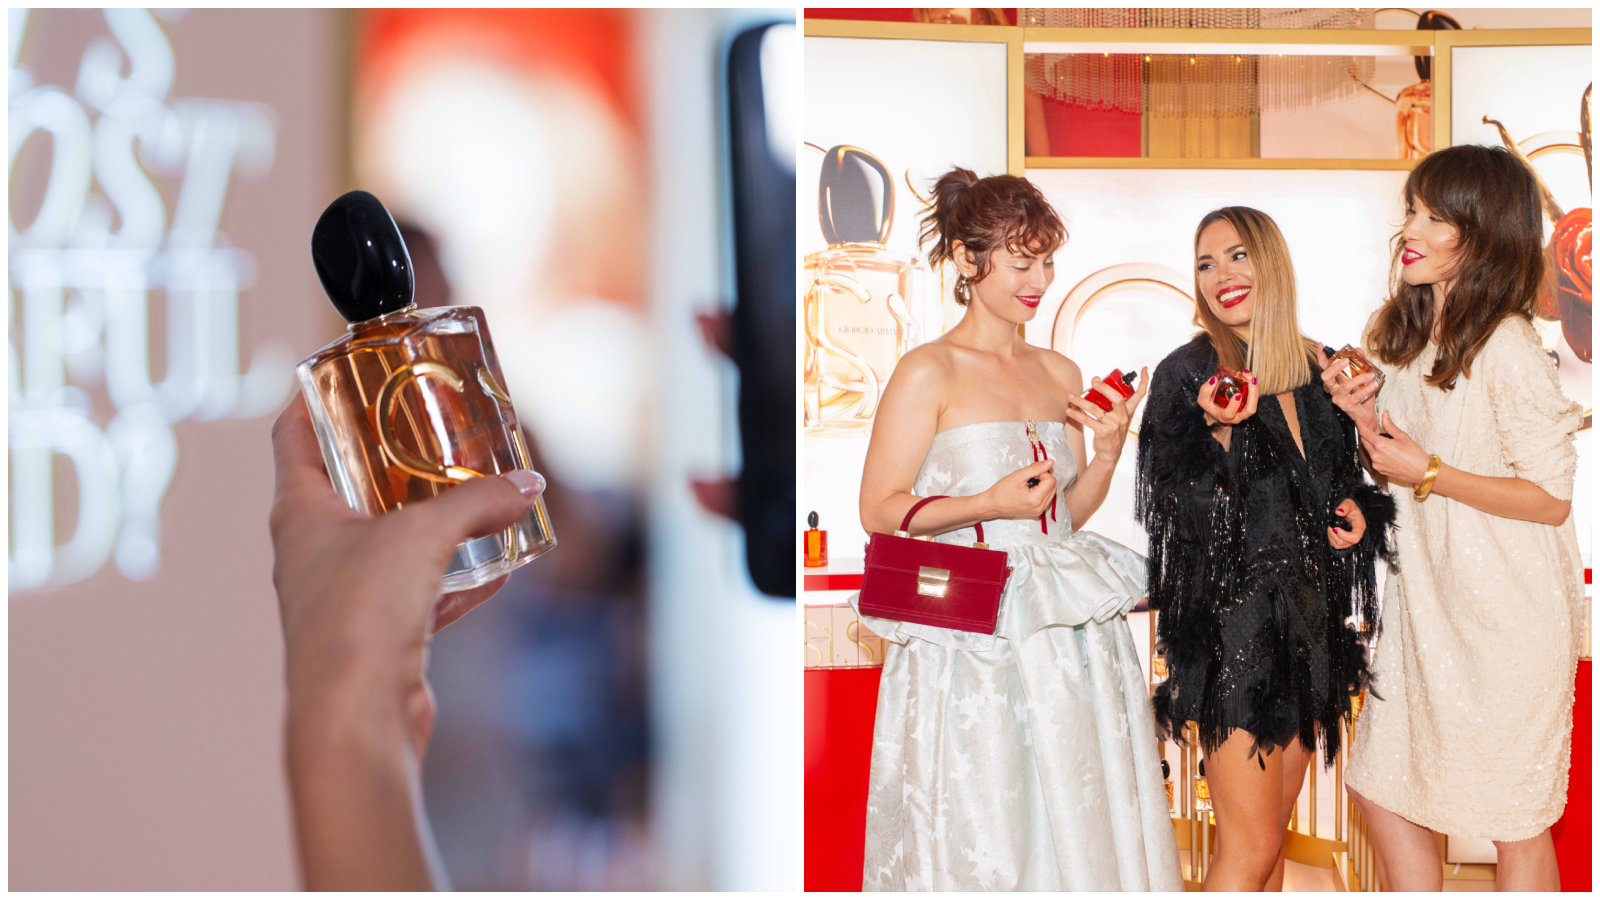 10. godišnjica kultnog Armani Sì parfema: U hotelu Esplanade predstavljena nova bočica